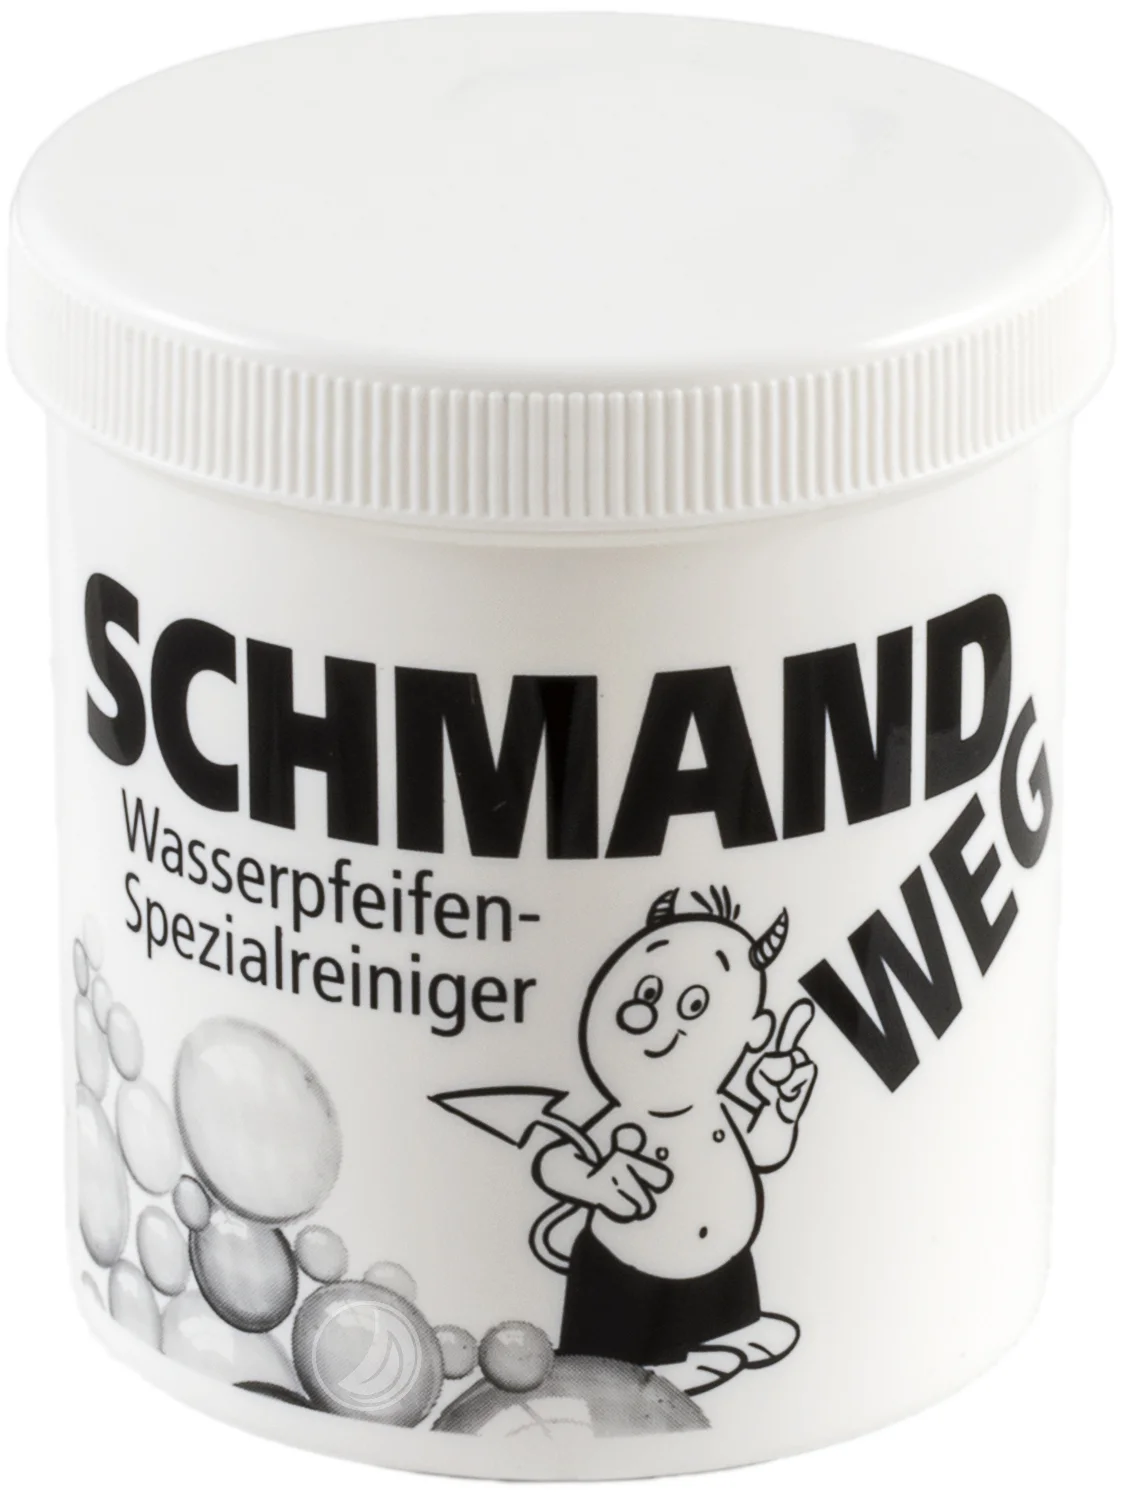 Wasserpfeifen Spezialreiniger "Schmand Weg" - 150 Gramm